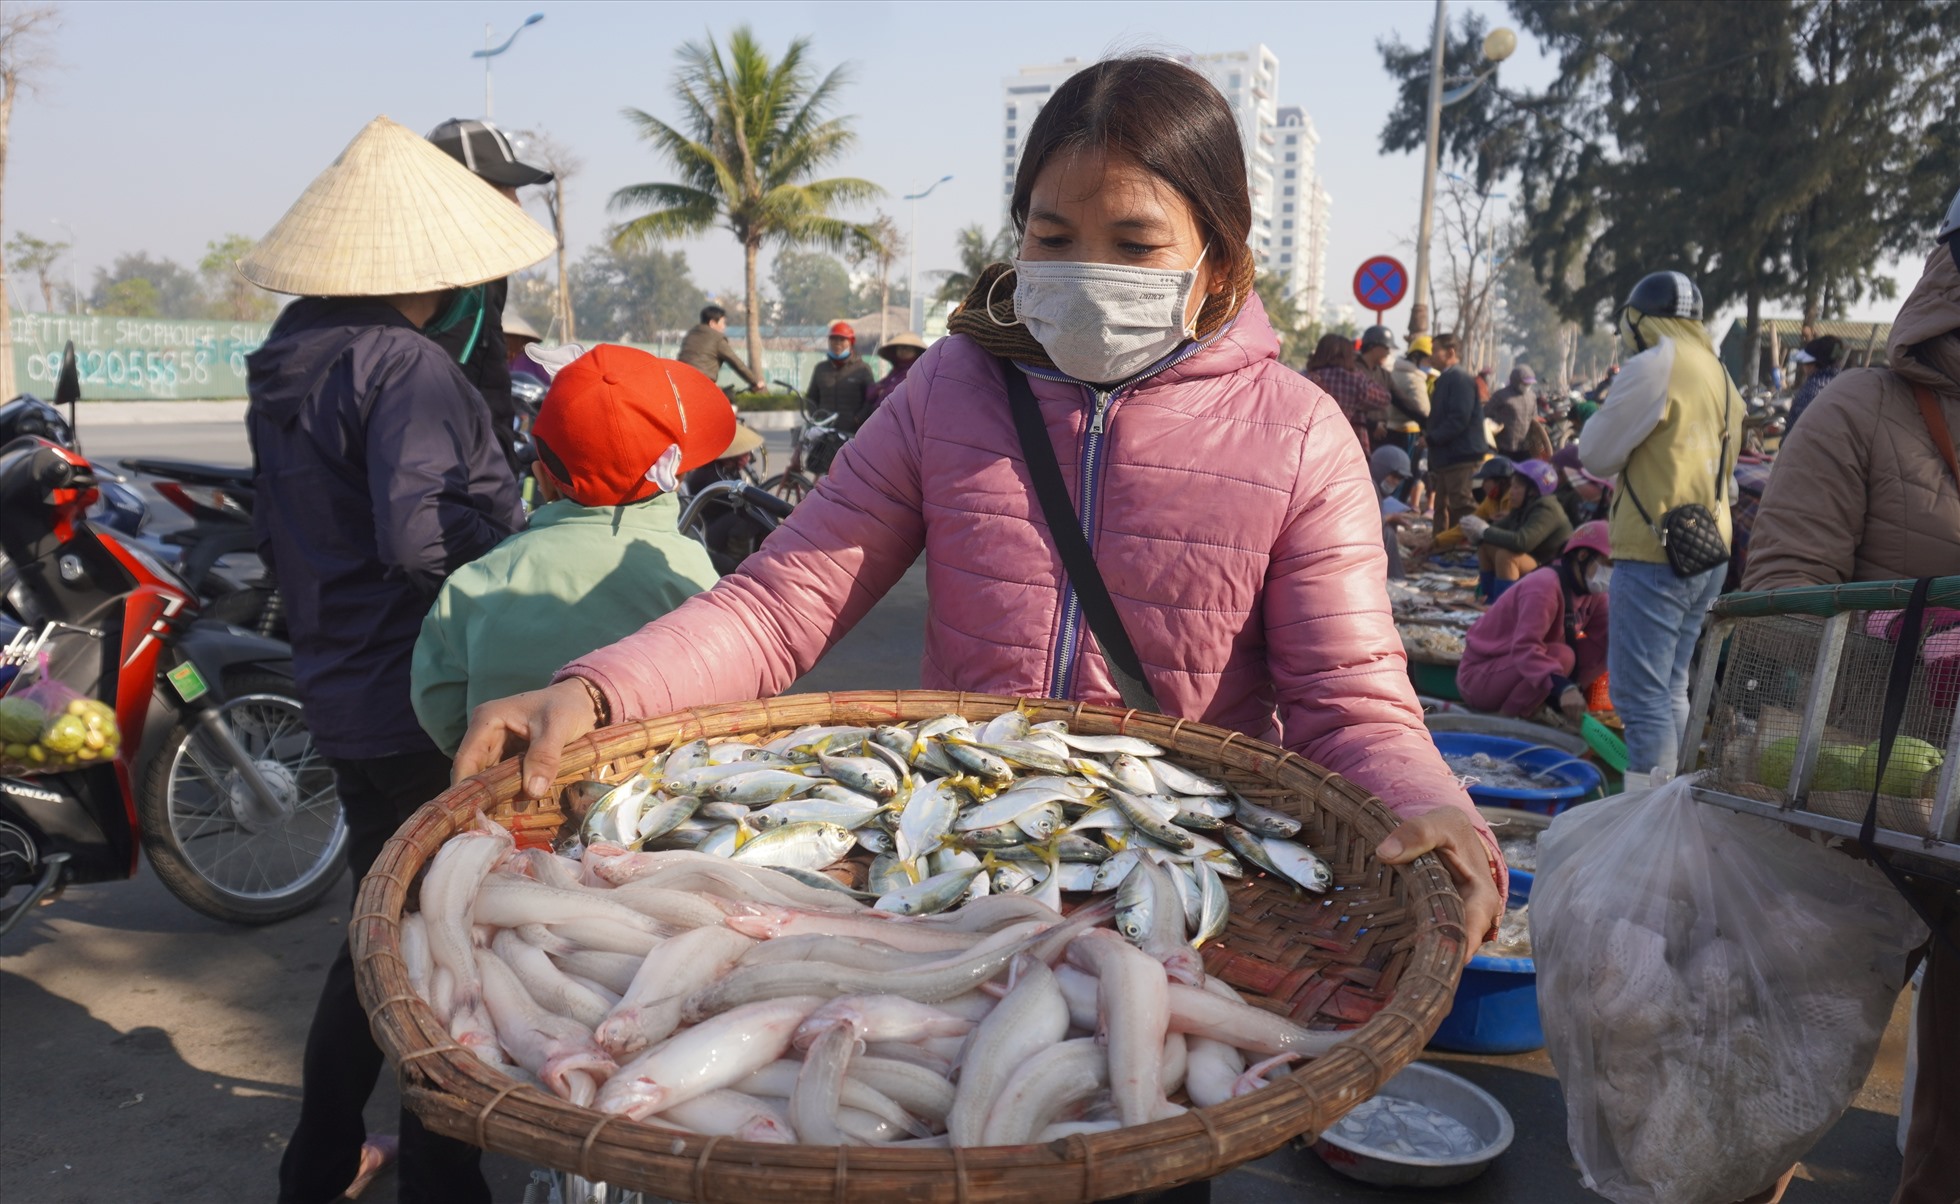 Loại hải sản được người dân tìm mua nhiều nhất là cá khoai, hiện, giá bán cá khoai tại biển Sầm Sơn dao động ở mức khoảng 500 nghìn/1kg. Ảnh: Quách Du